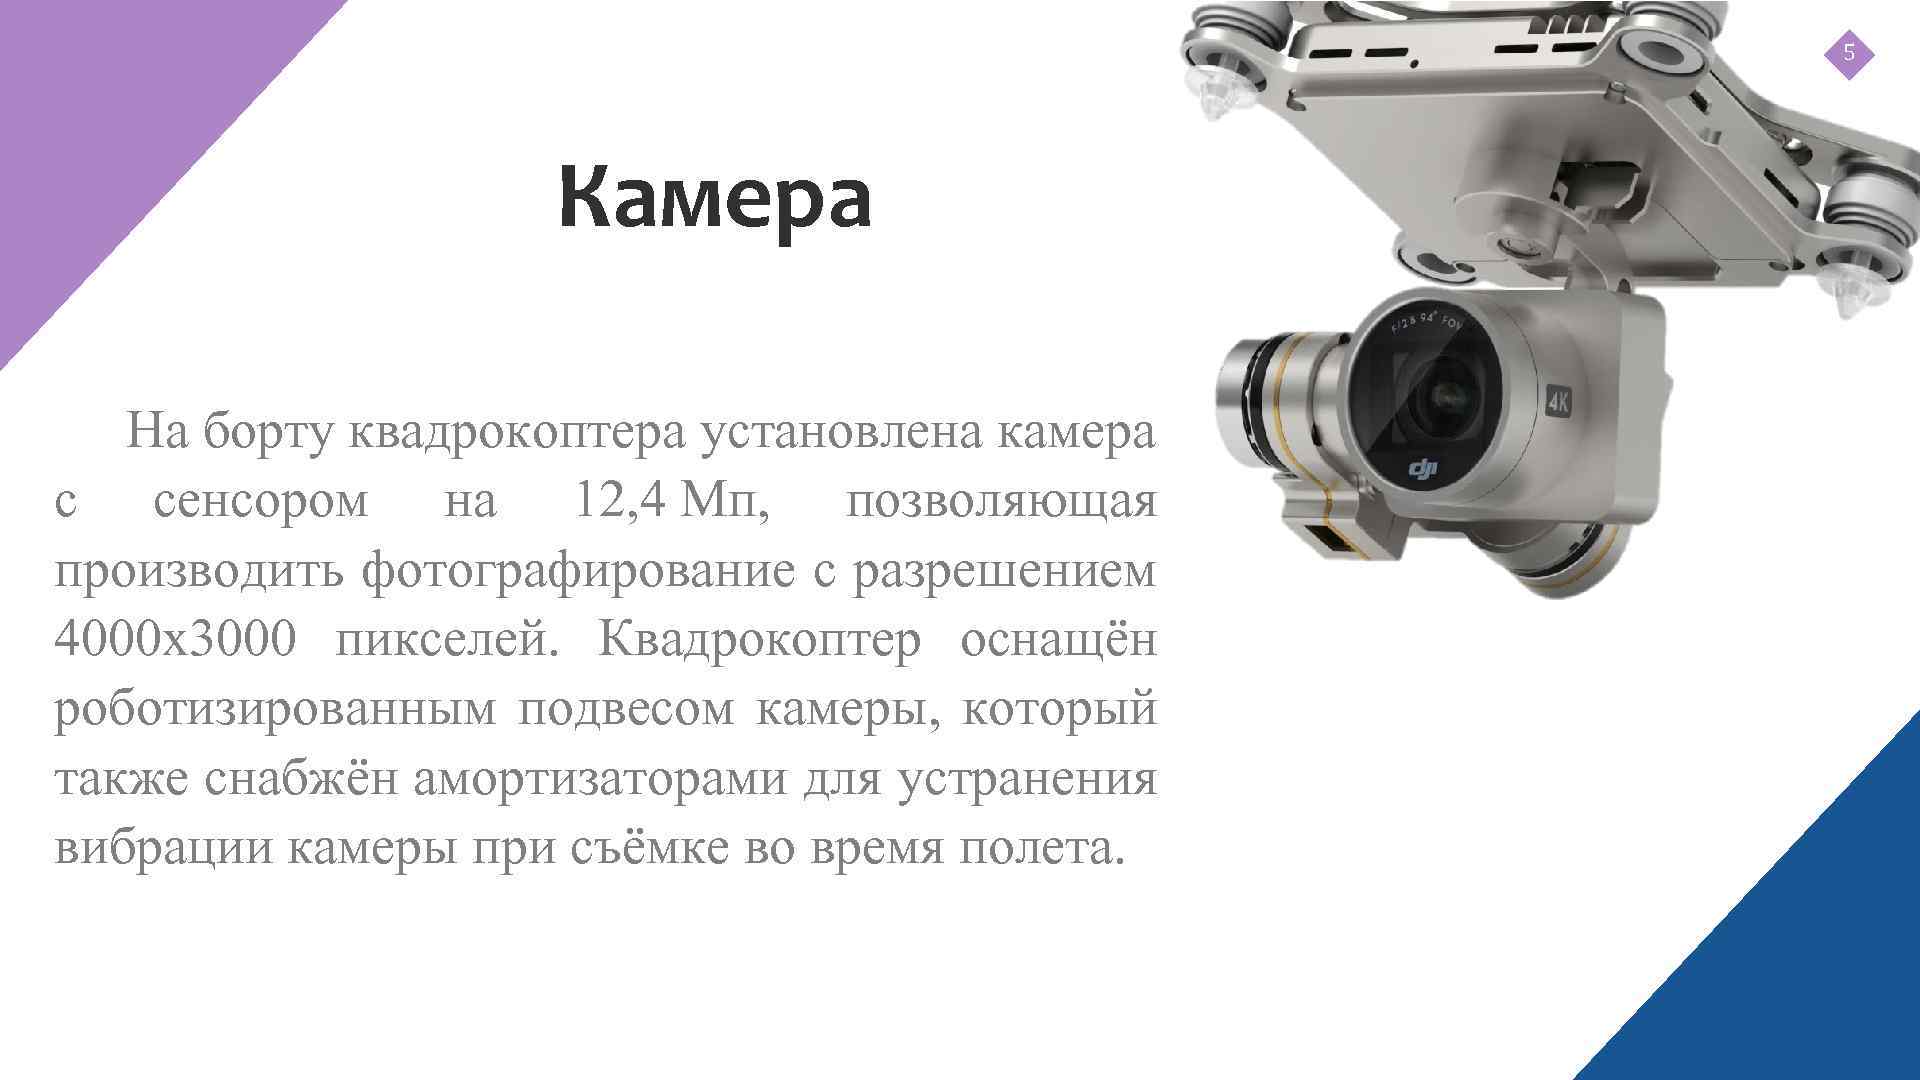 5 Камера На борту квадрокоптера установлена камера с сенсором на 12, 4 Мп, позволяющая